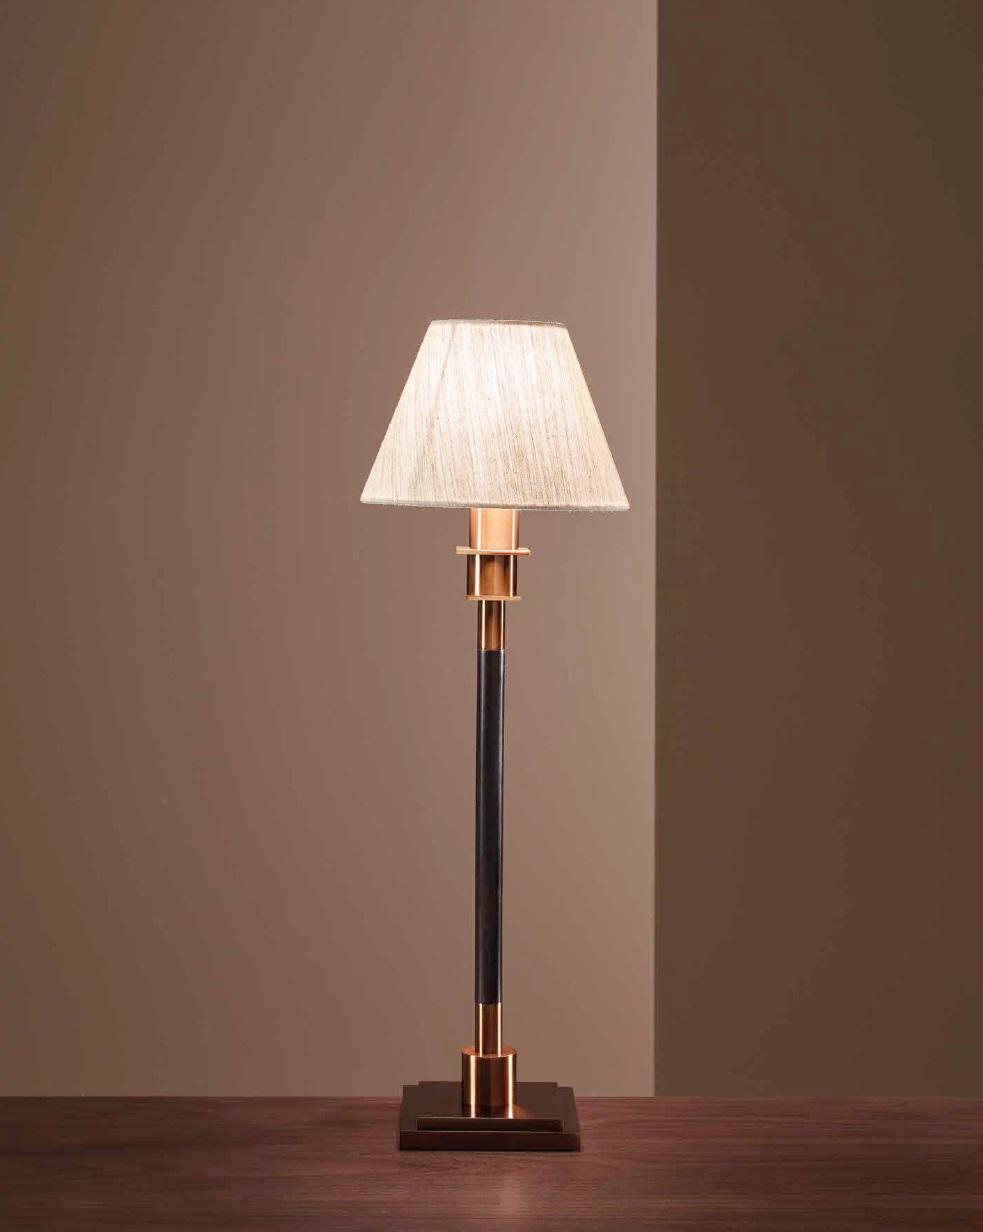 Tischleuchte Wohnzimmer Tischlampe Schlafzimmer Lampe Metall neu